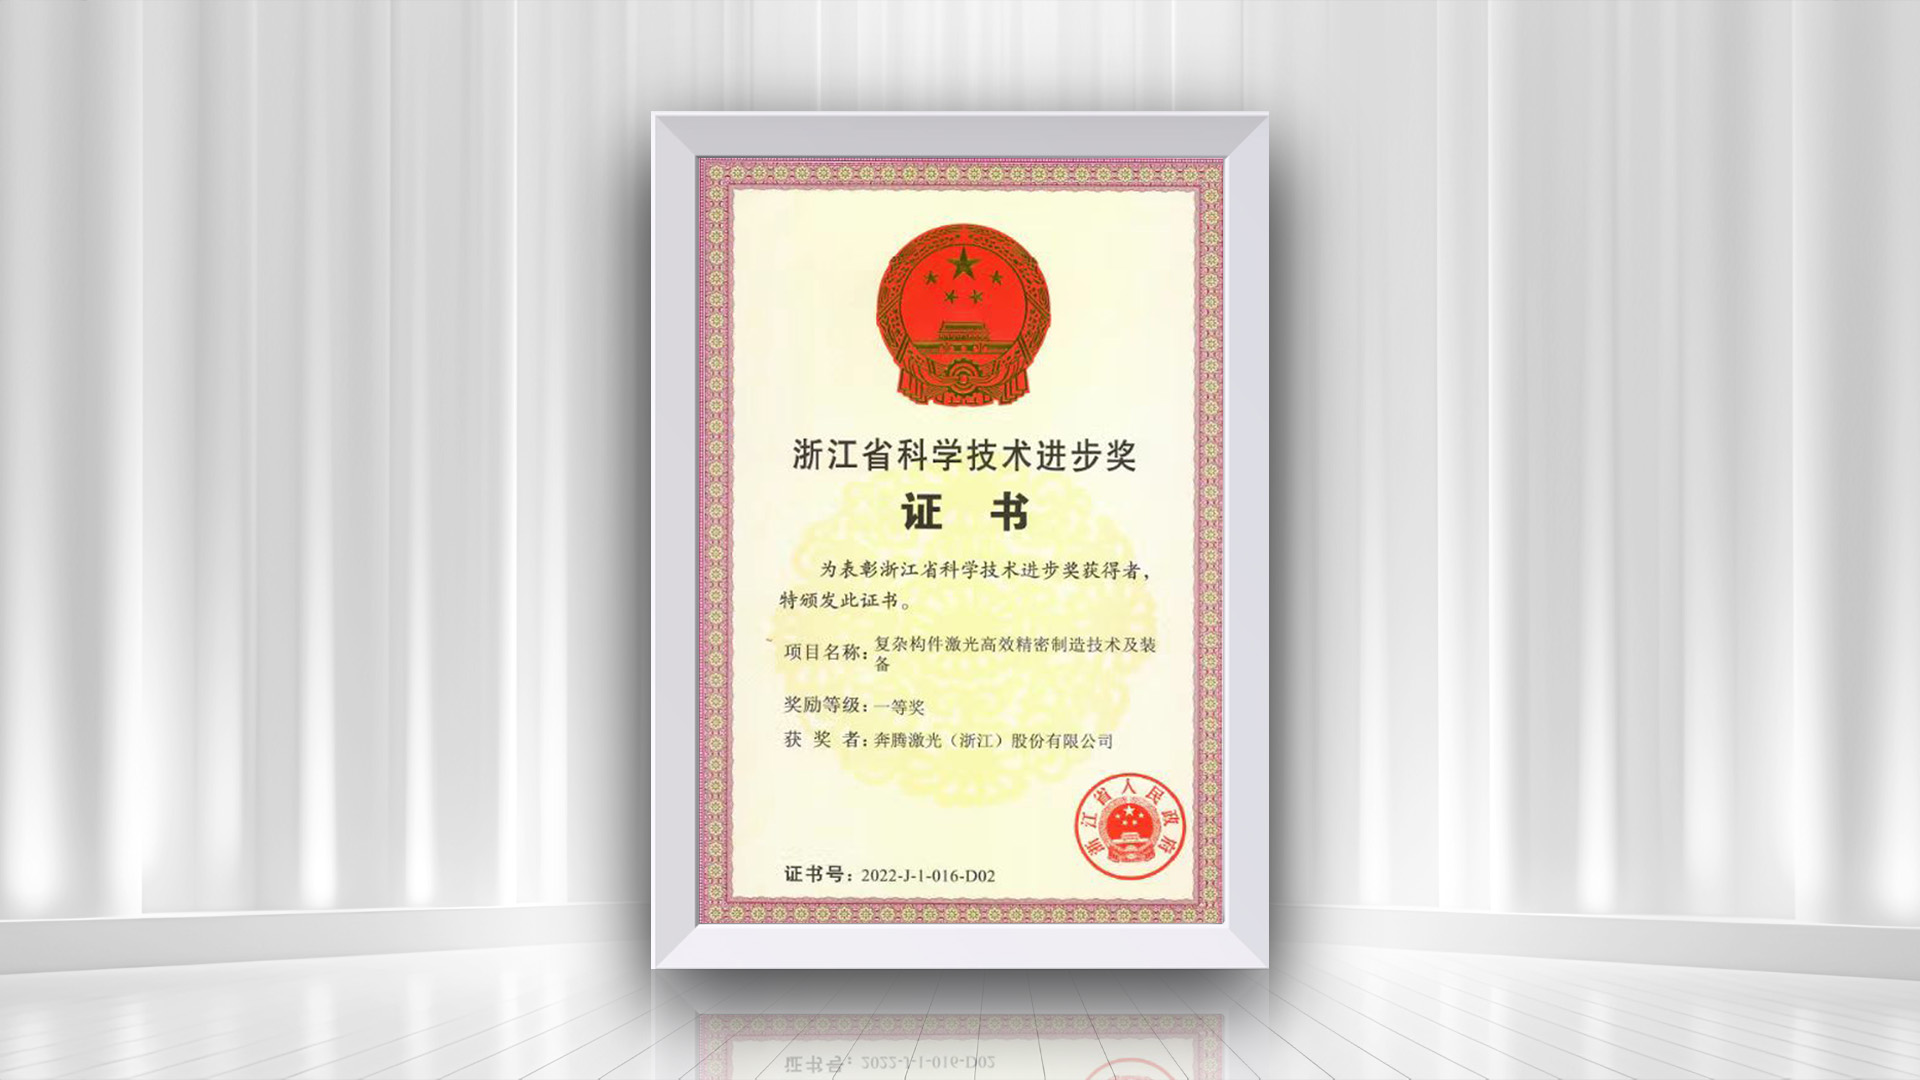 ペンタレーザーが「複合コンポーネントレーザーの効率的な精密製造技術と装置」プロジェクトで浙江省科学技術進歩賞の一等賞を受賞したことをお祝いします。